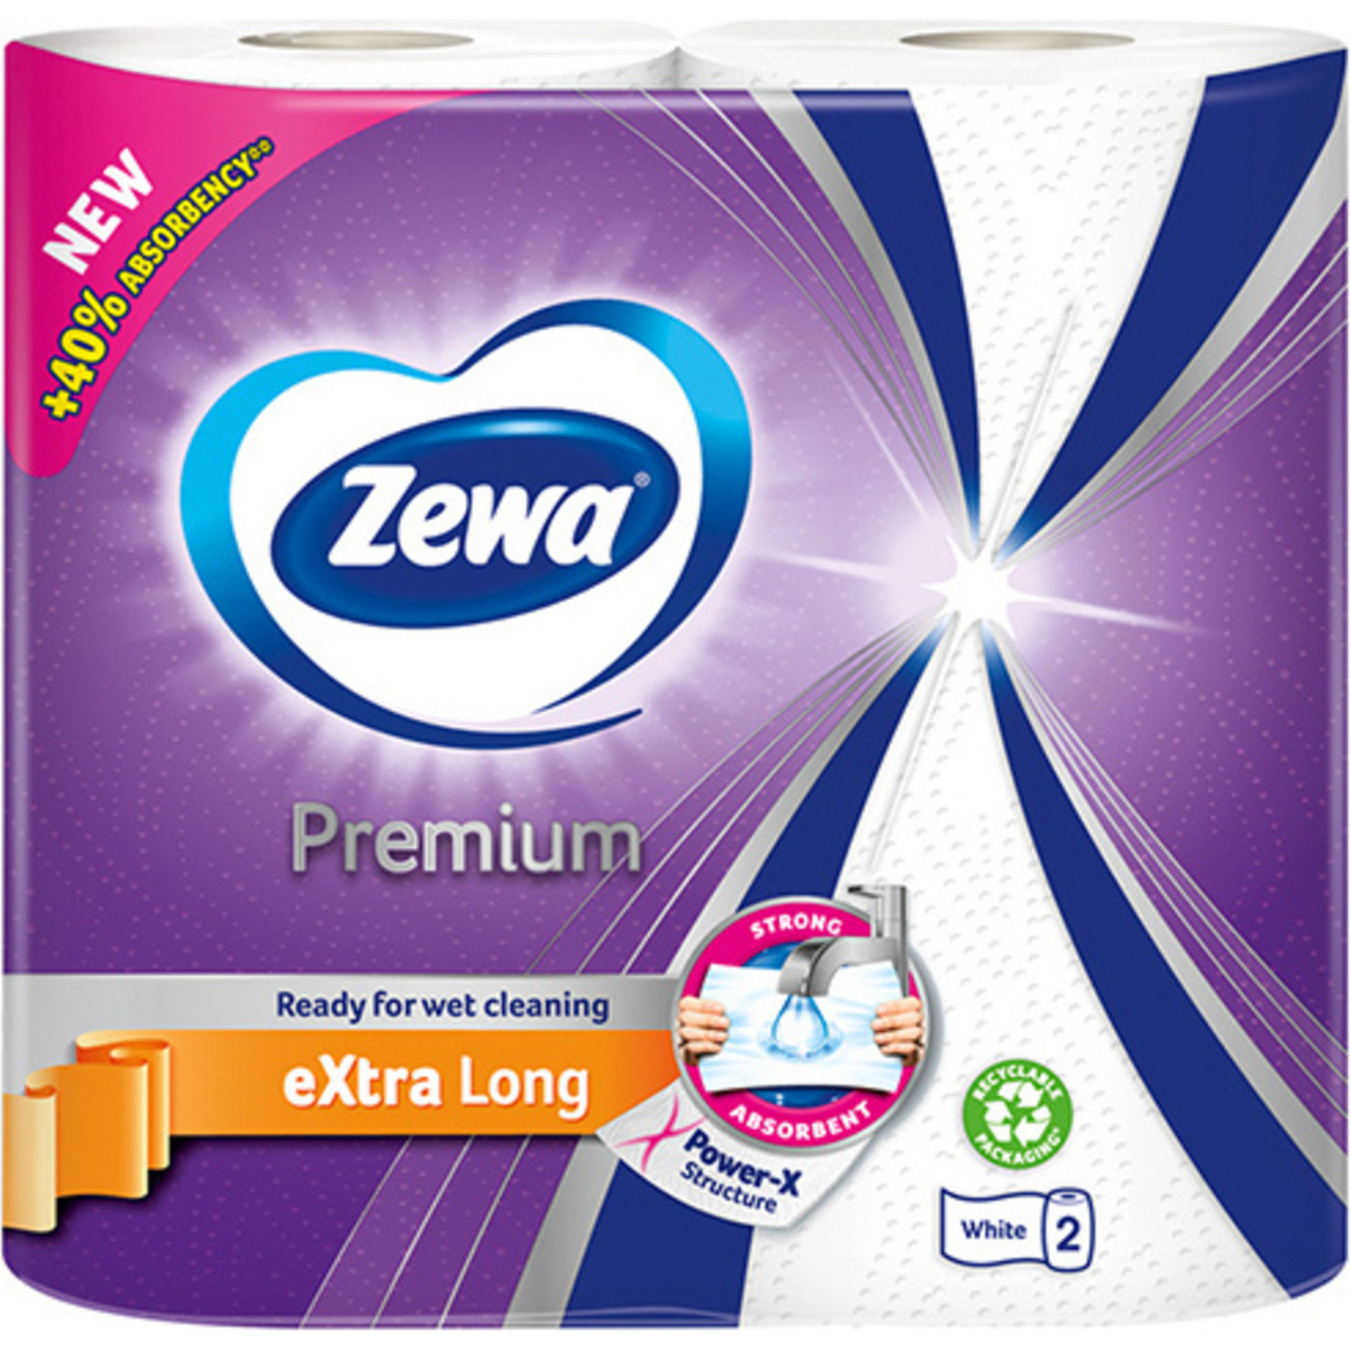 Zewa Premium Extra Long Paper Towels 2pcs
